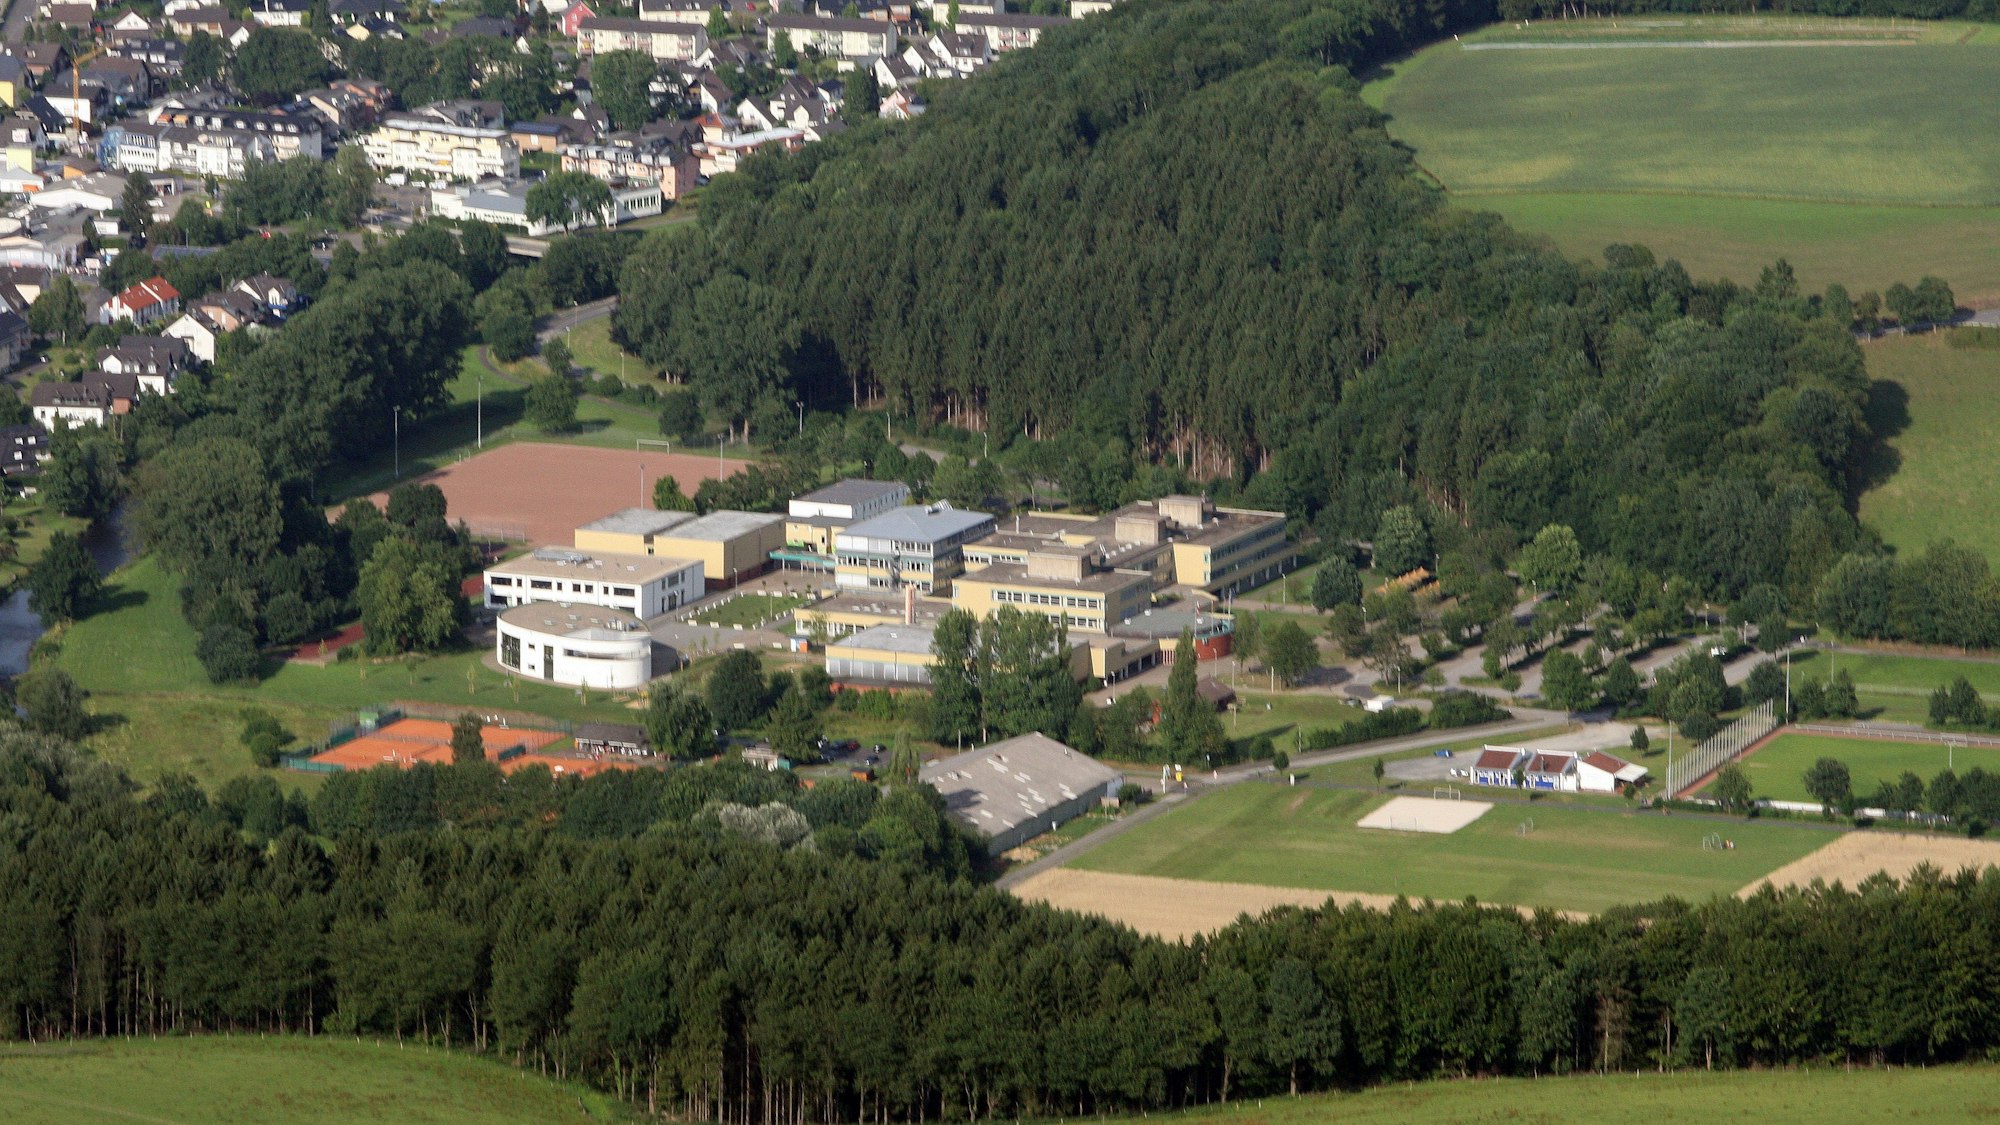 Luftbild des Schulzentrums Cyriax in OVerath.